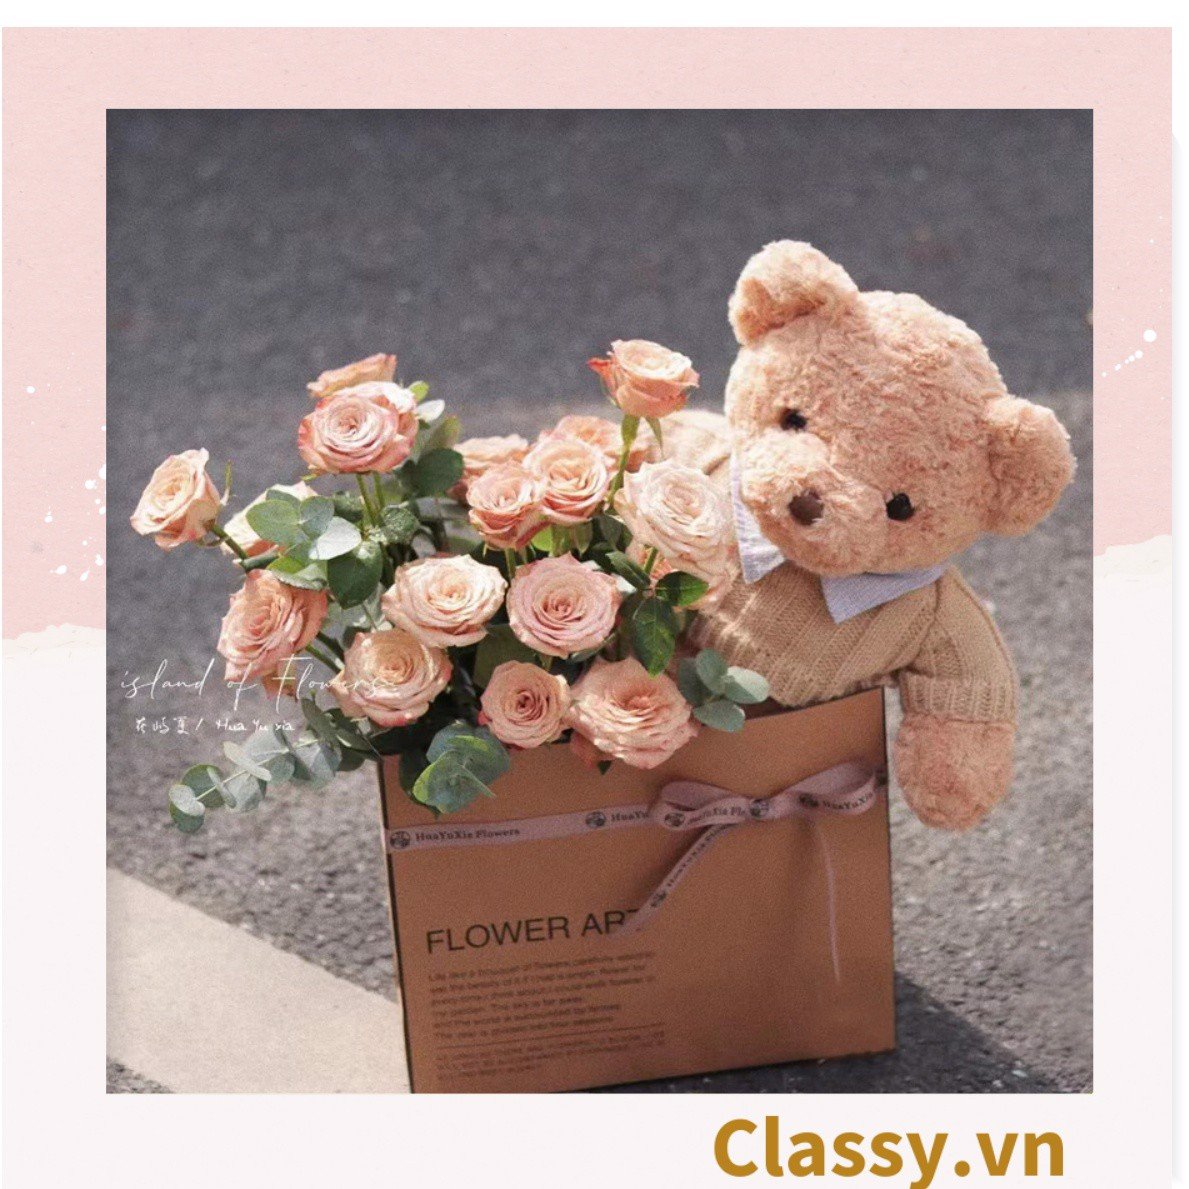 Túi giấy quai xách 30 X 25 X 13 cm đựng hoa trang trí in chữ Flower Art màu Nâu kraft vintage Q1727 (không kèm gấu, hoa, ruy băng)